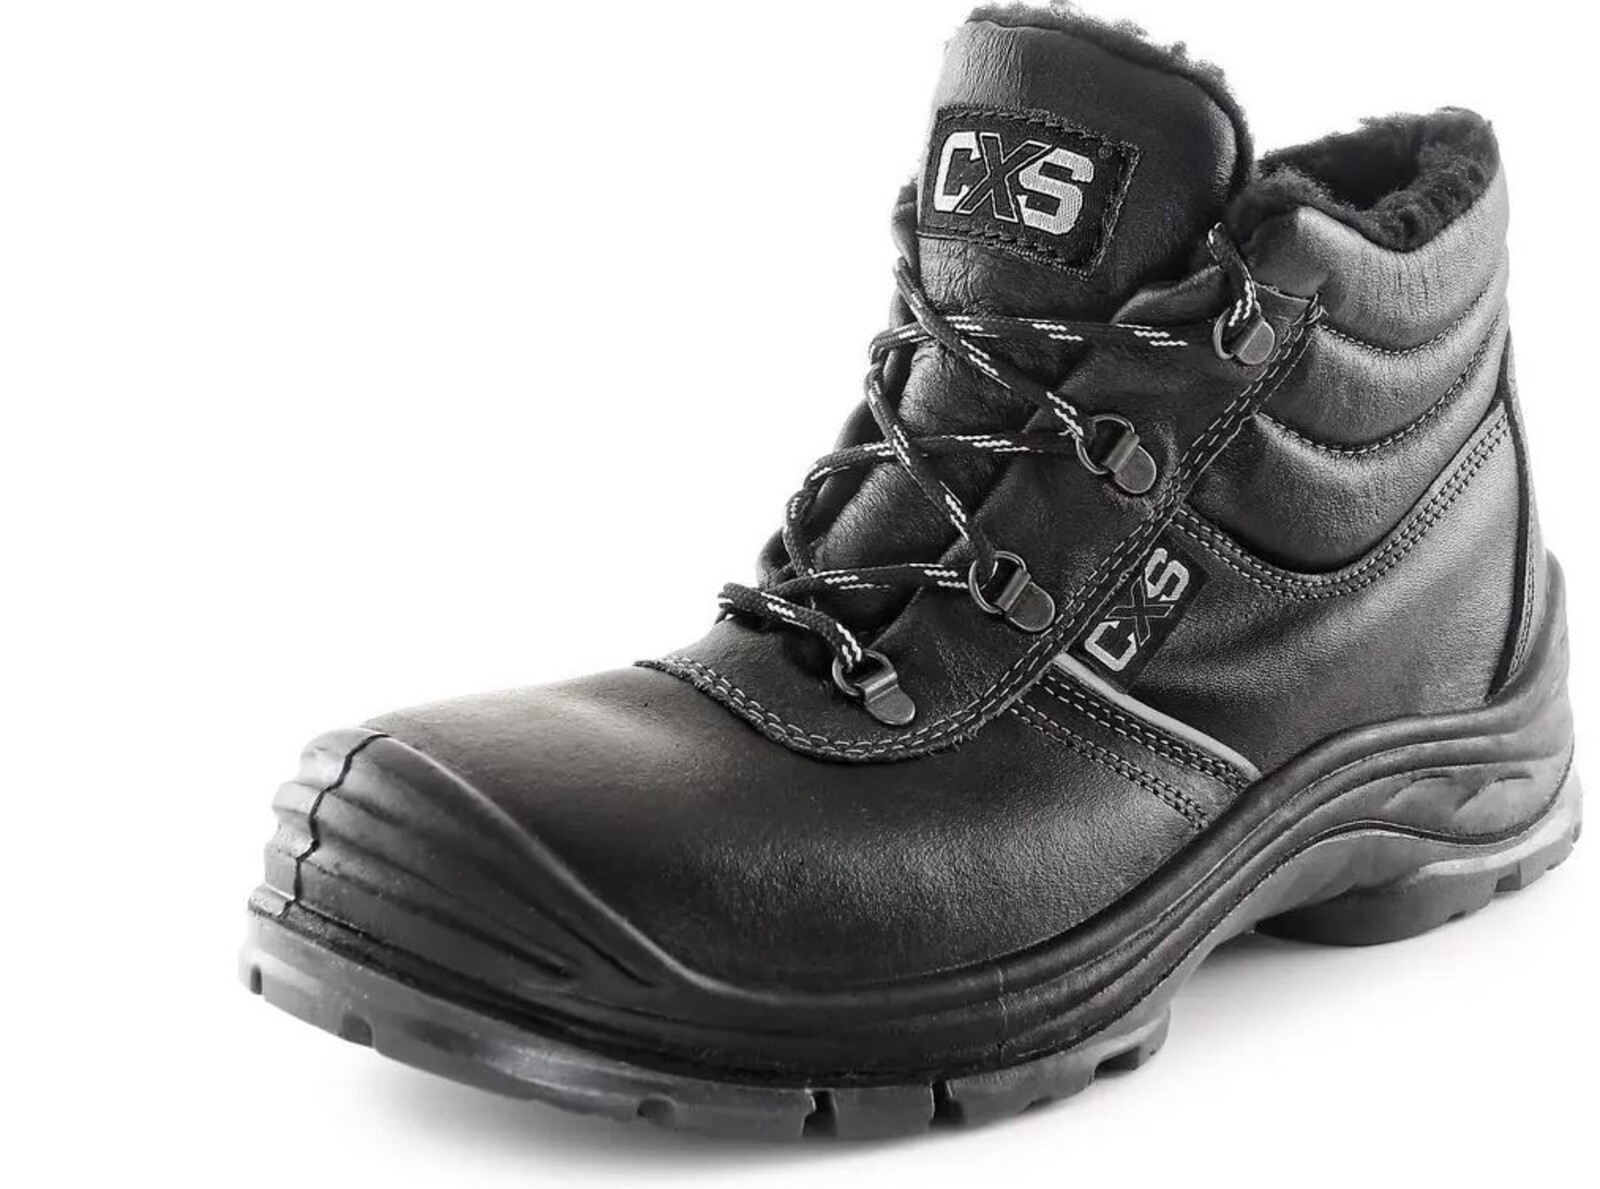 Zimná bezpečnostná členková obuv CXS Safety Steel Nickel S3 - veľkosť: 43, farba: čierna